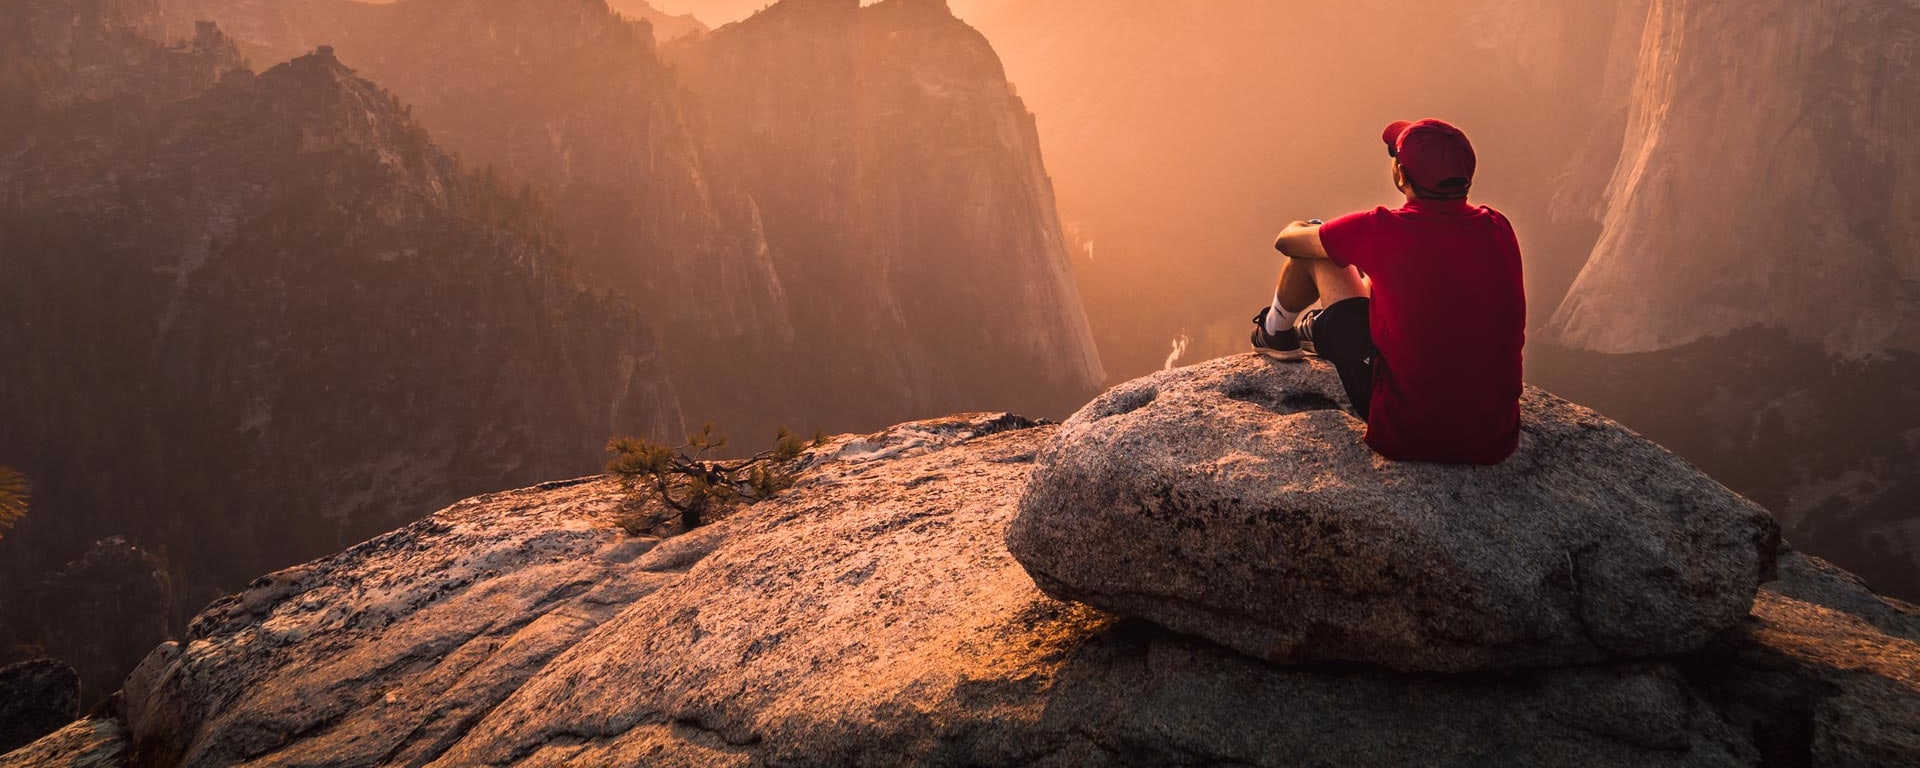  Un uomo con una cuffia rossa è seduto su un affaccio roccioso e guarda il tramonto.